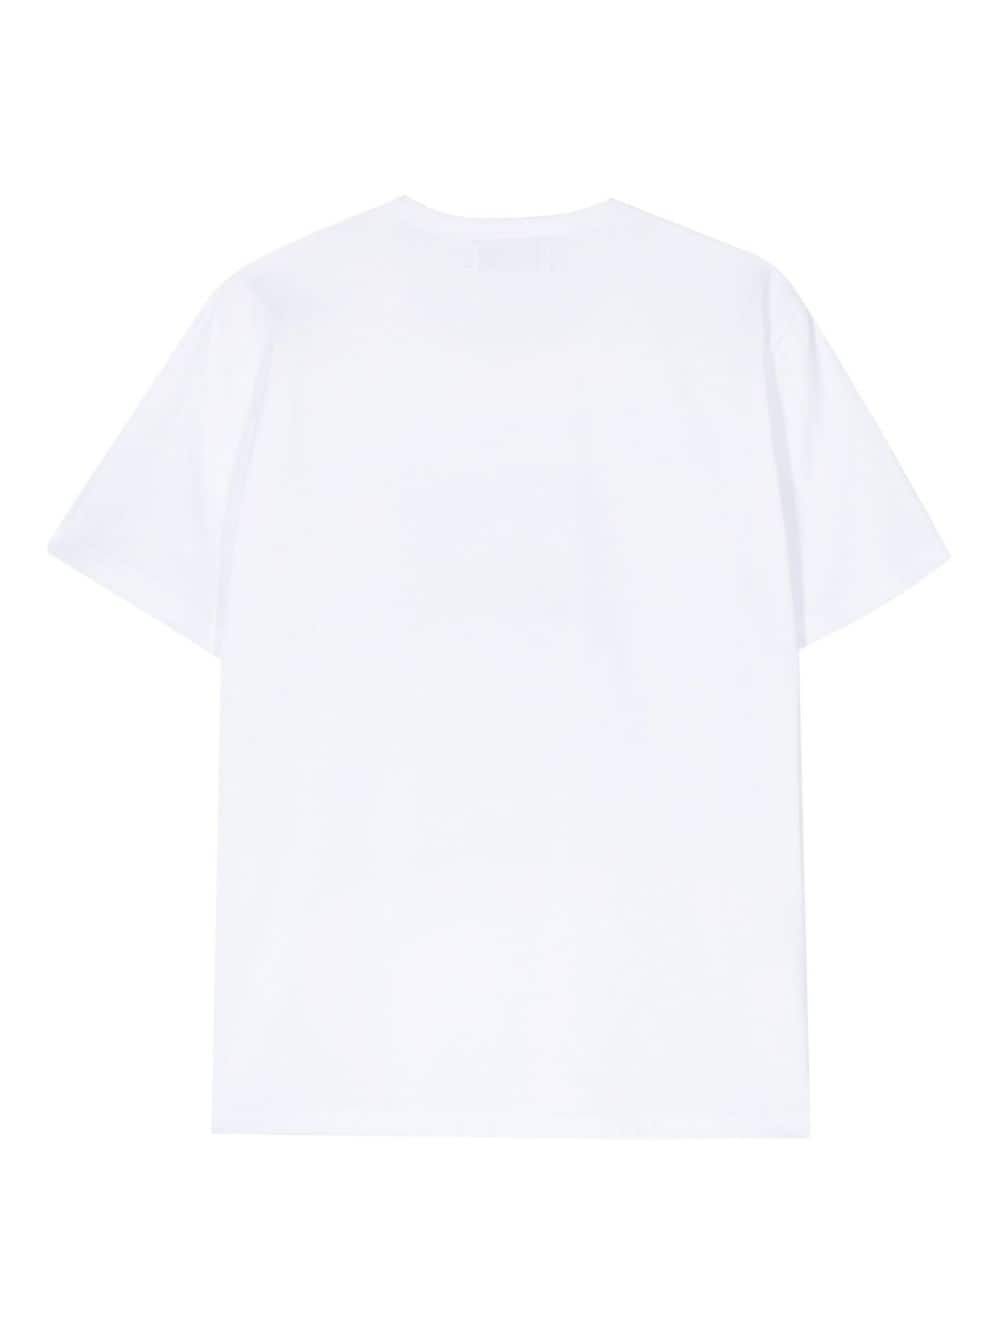 Image 2 of Société Anonyme Strangers cotton T-shirt